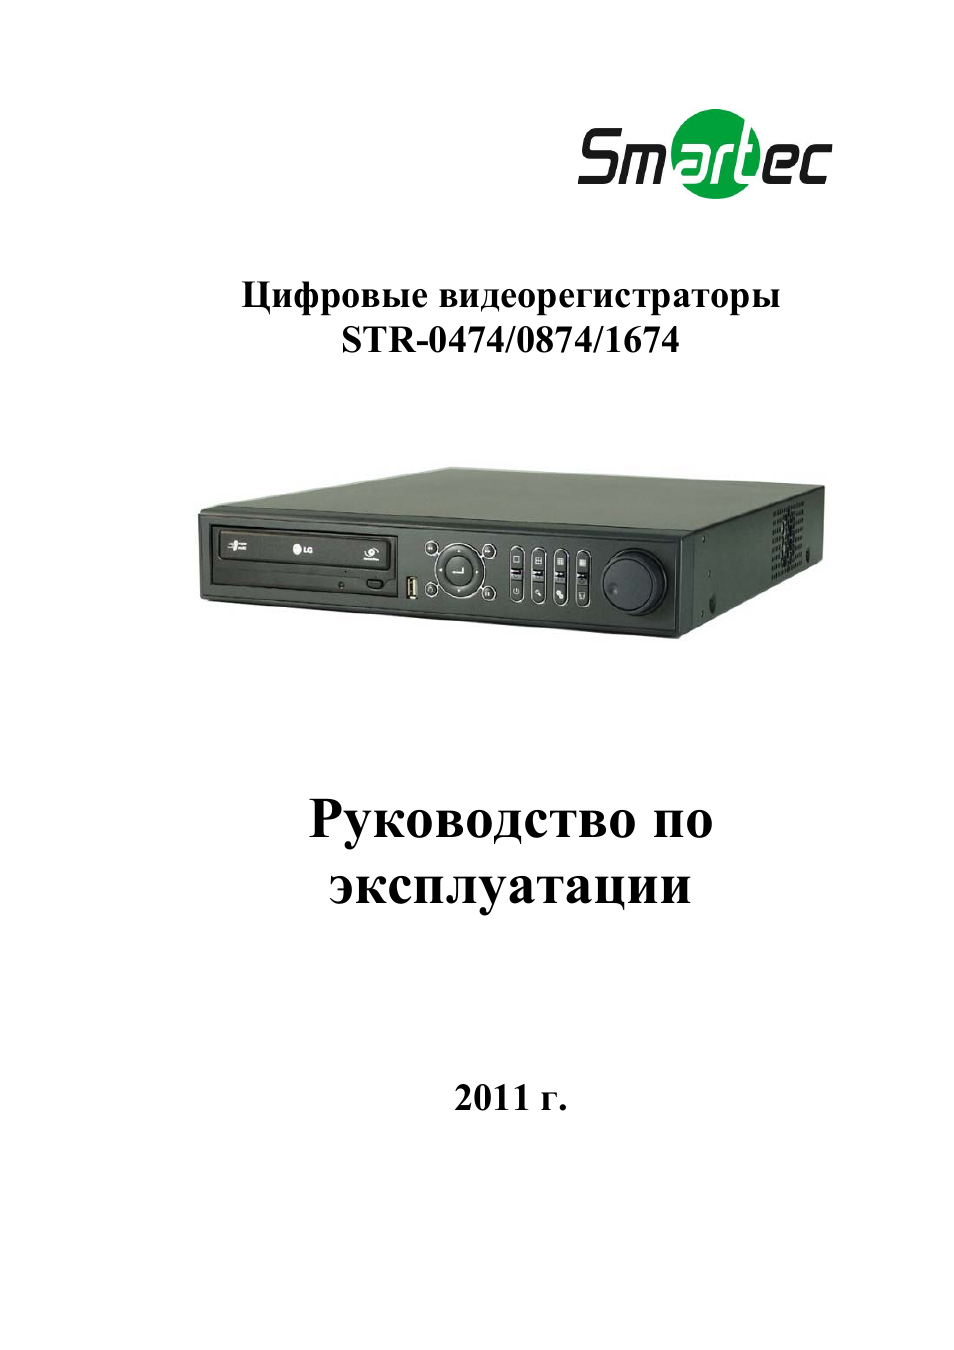 Dvr 929 видеорегистратор инструкция